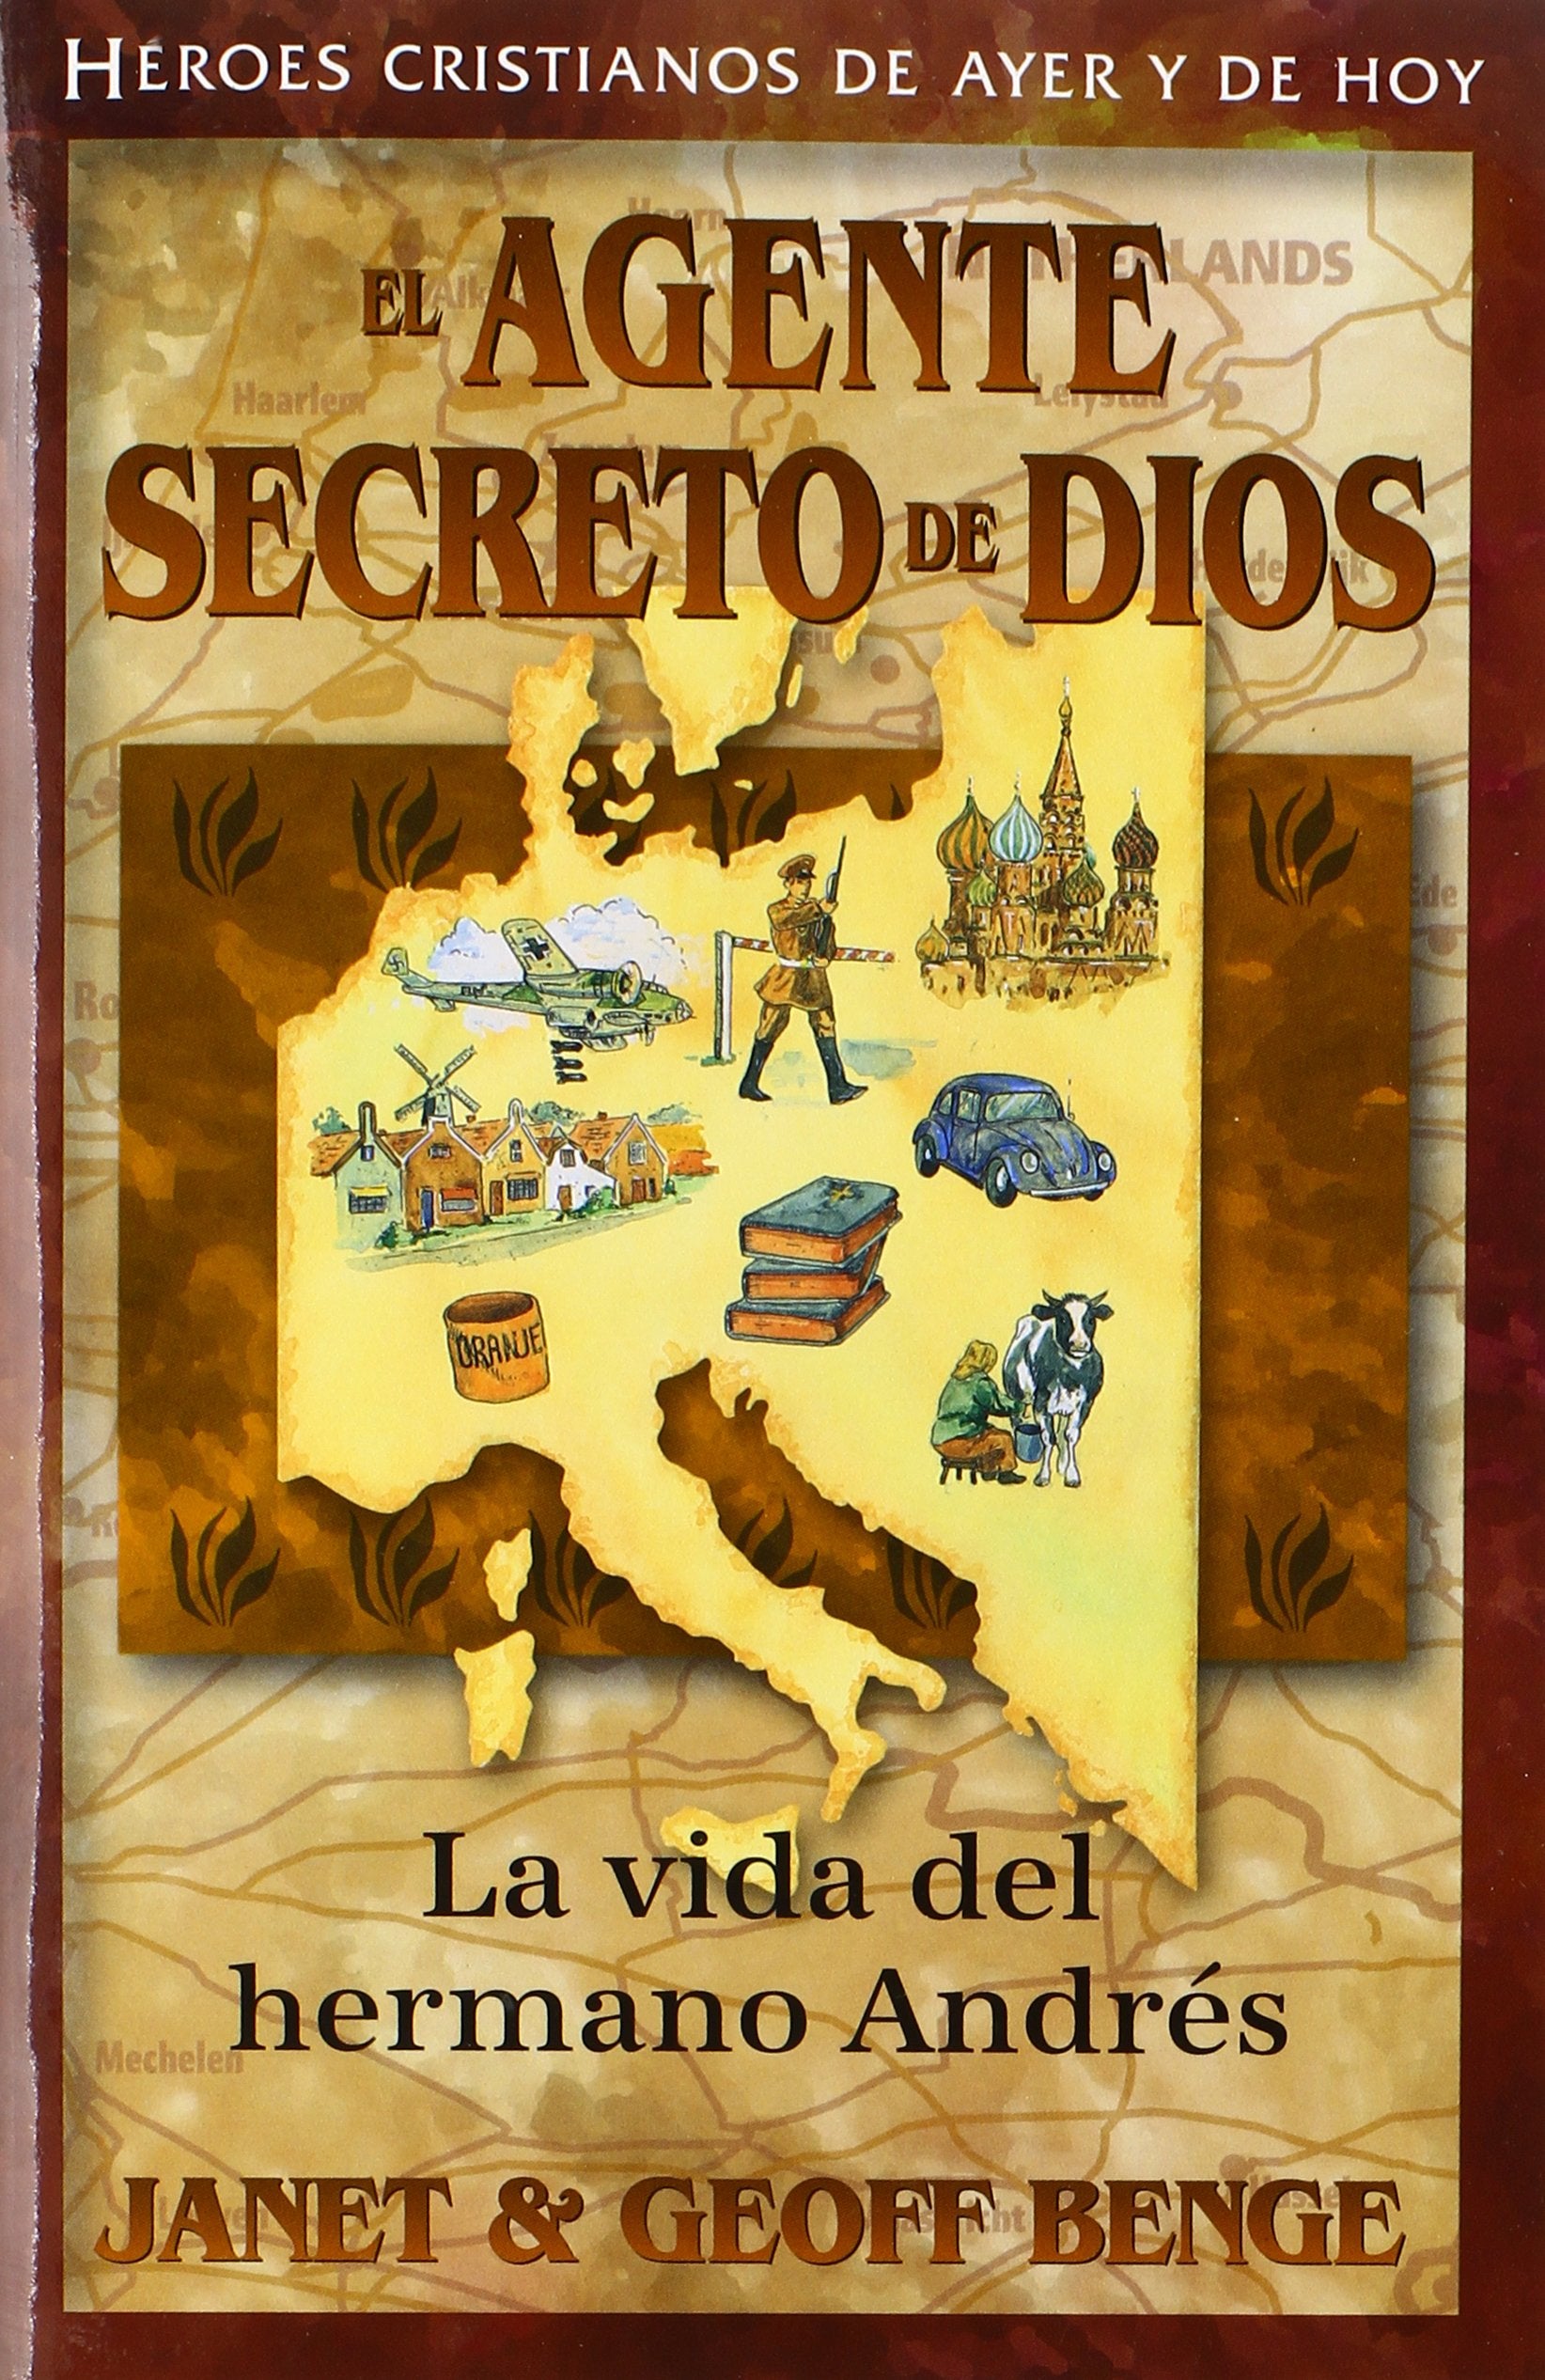 El Agente Secreto de Dios - Librería Libros Cristianos - Libro